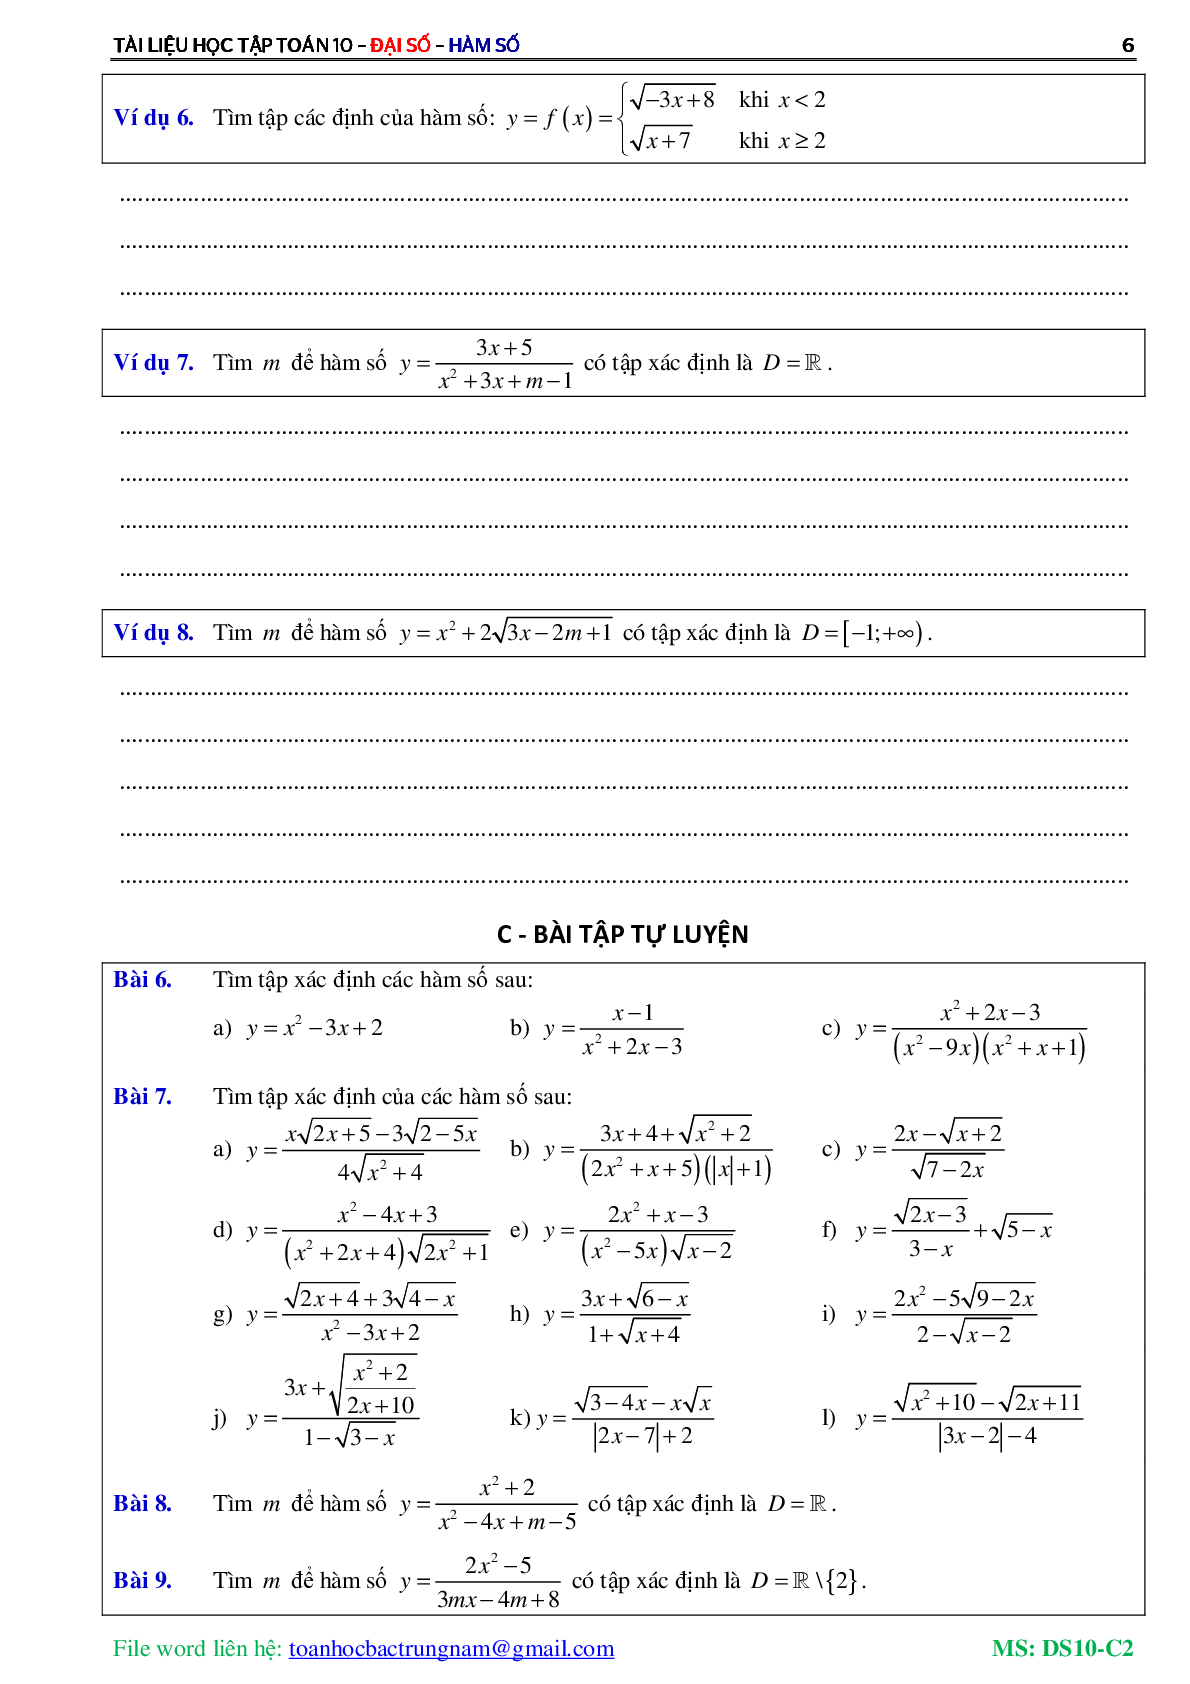 Chuyên đề về hàm số bậc nhất và hàm số bậc hai (trang 7)